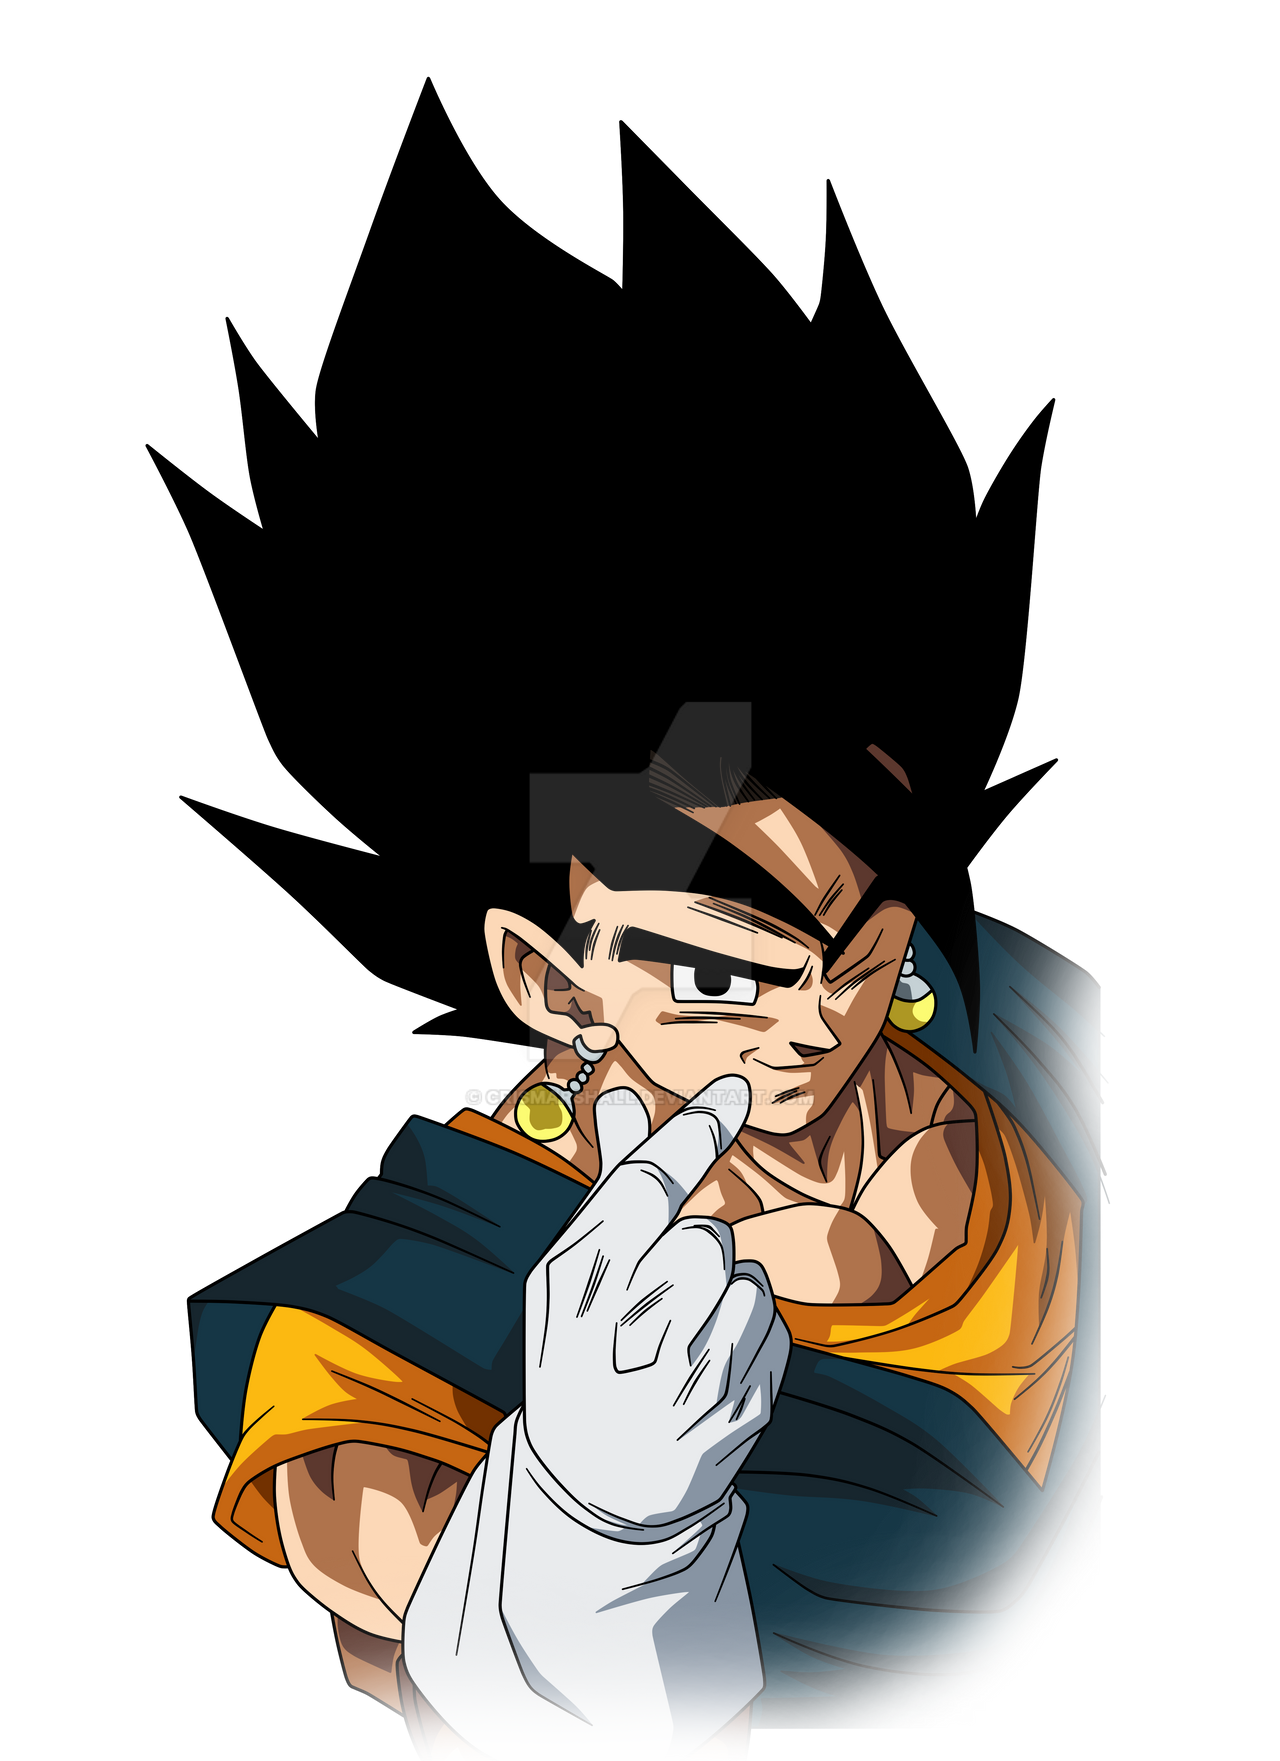 Goku Super Saiyan God by crismarshall on DeviantArt